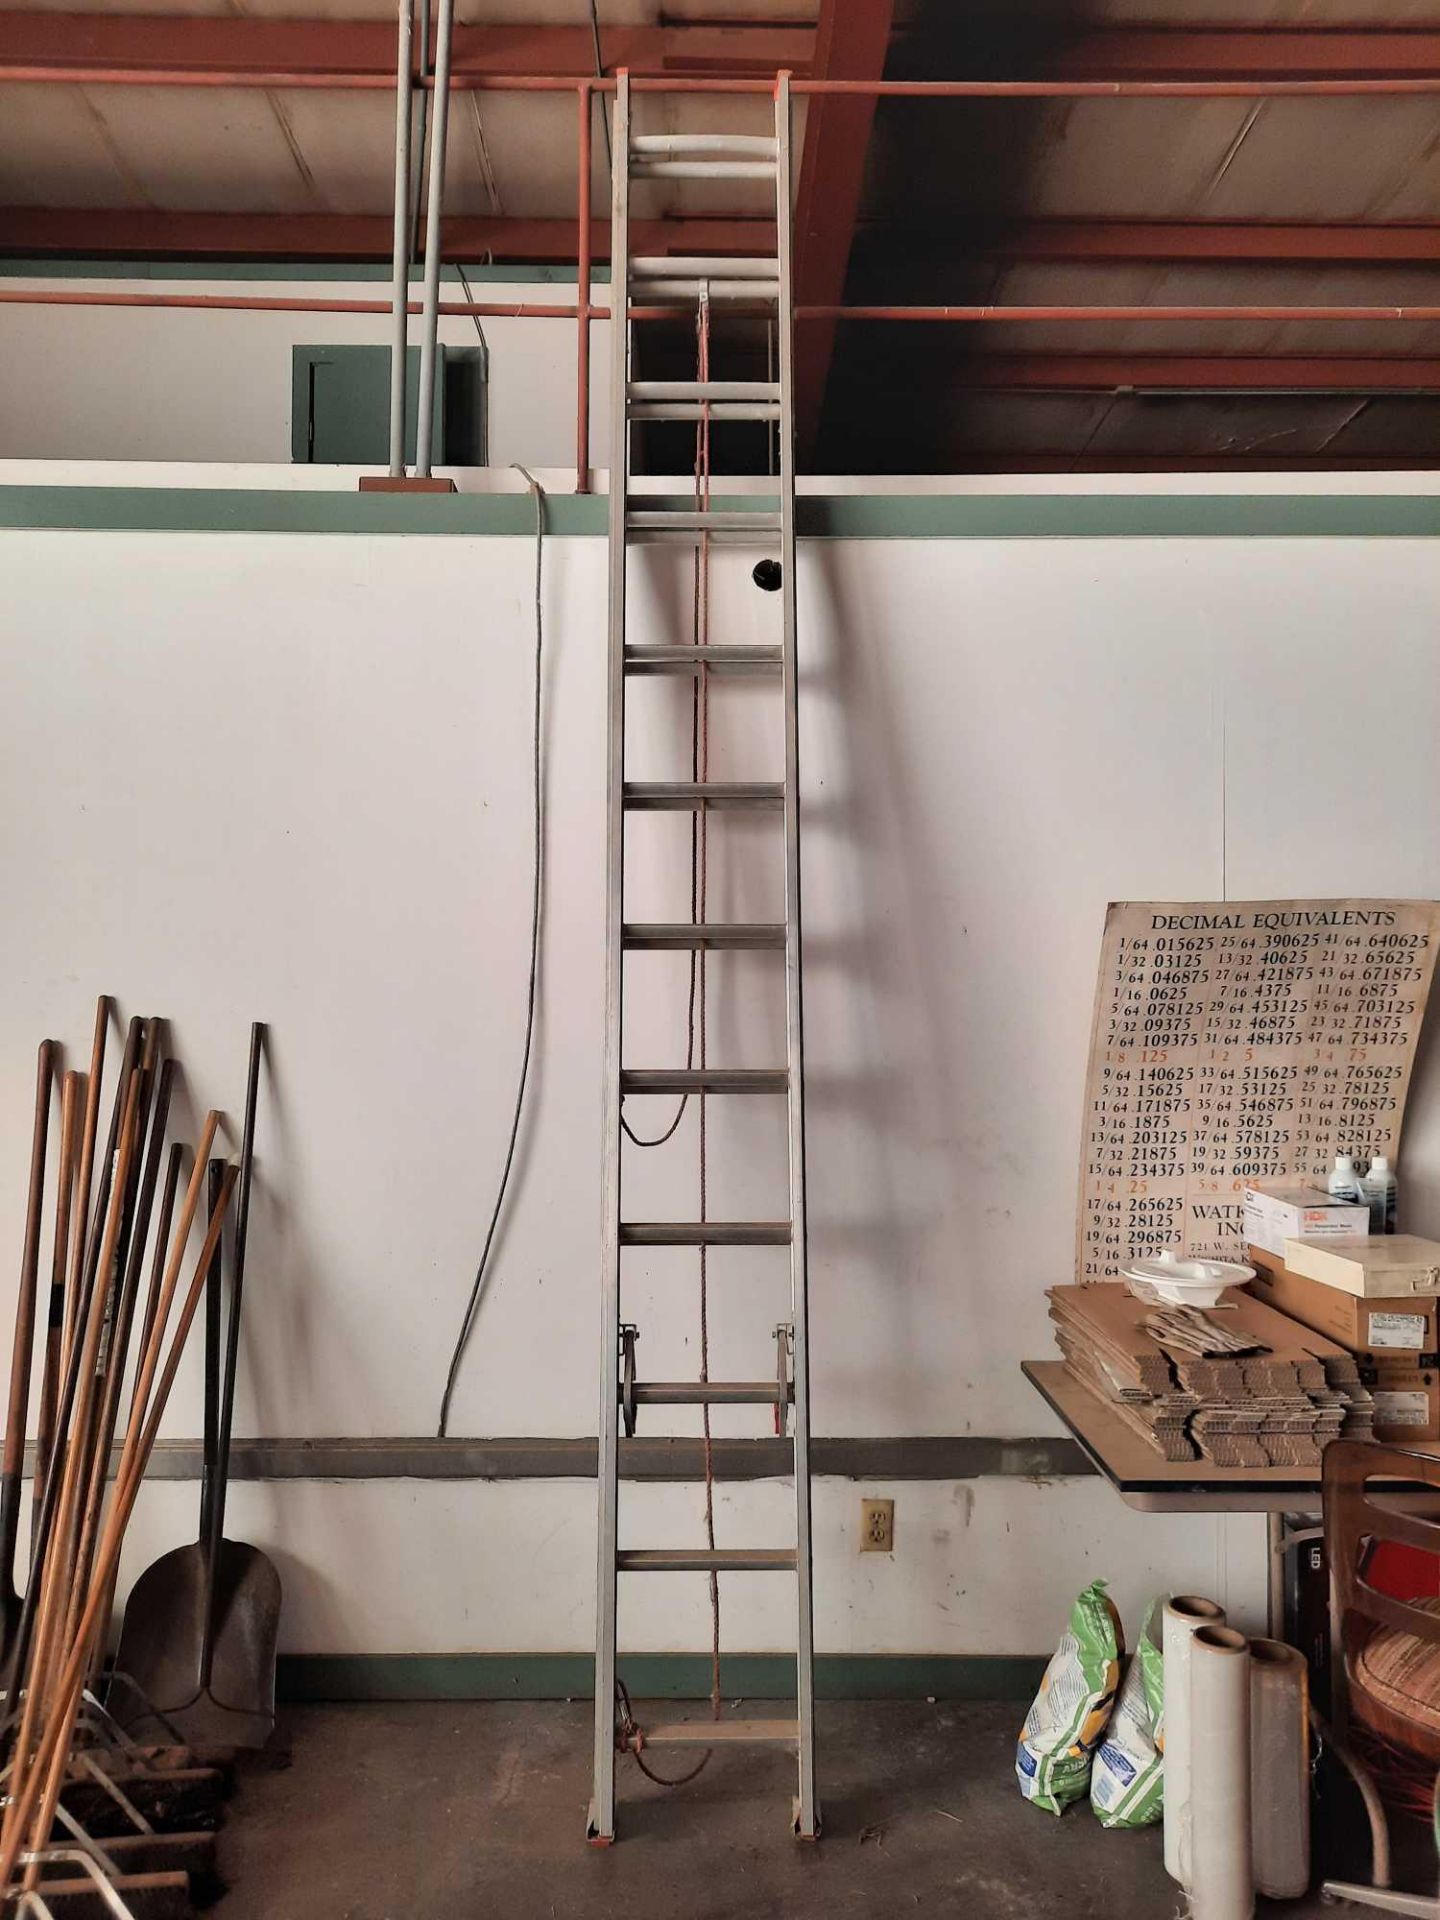 Werner 24 foot extension ladder, model D1124-2, 200lb capacity